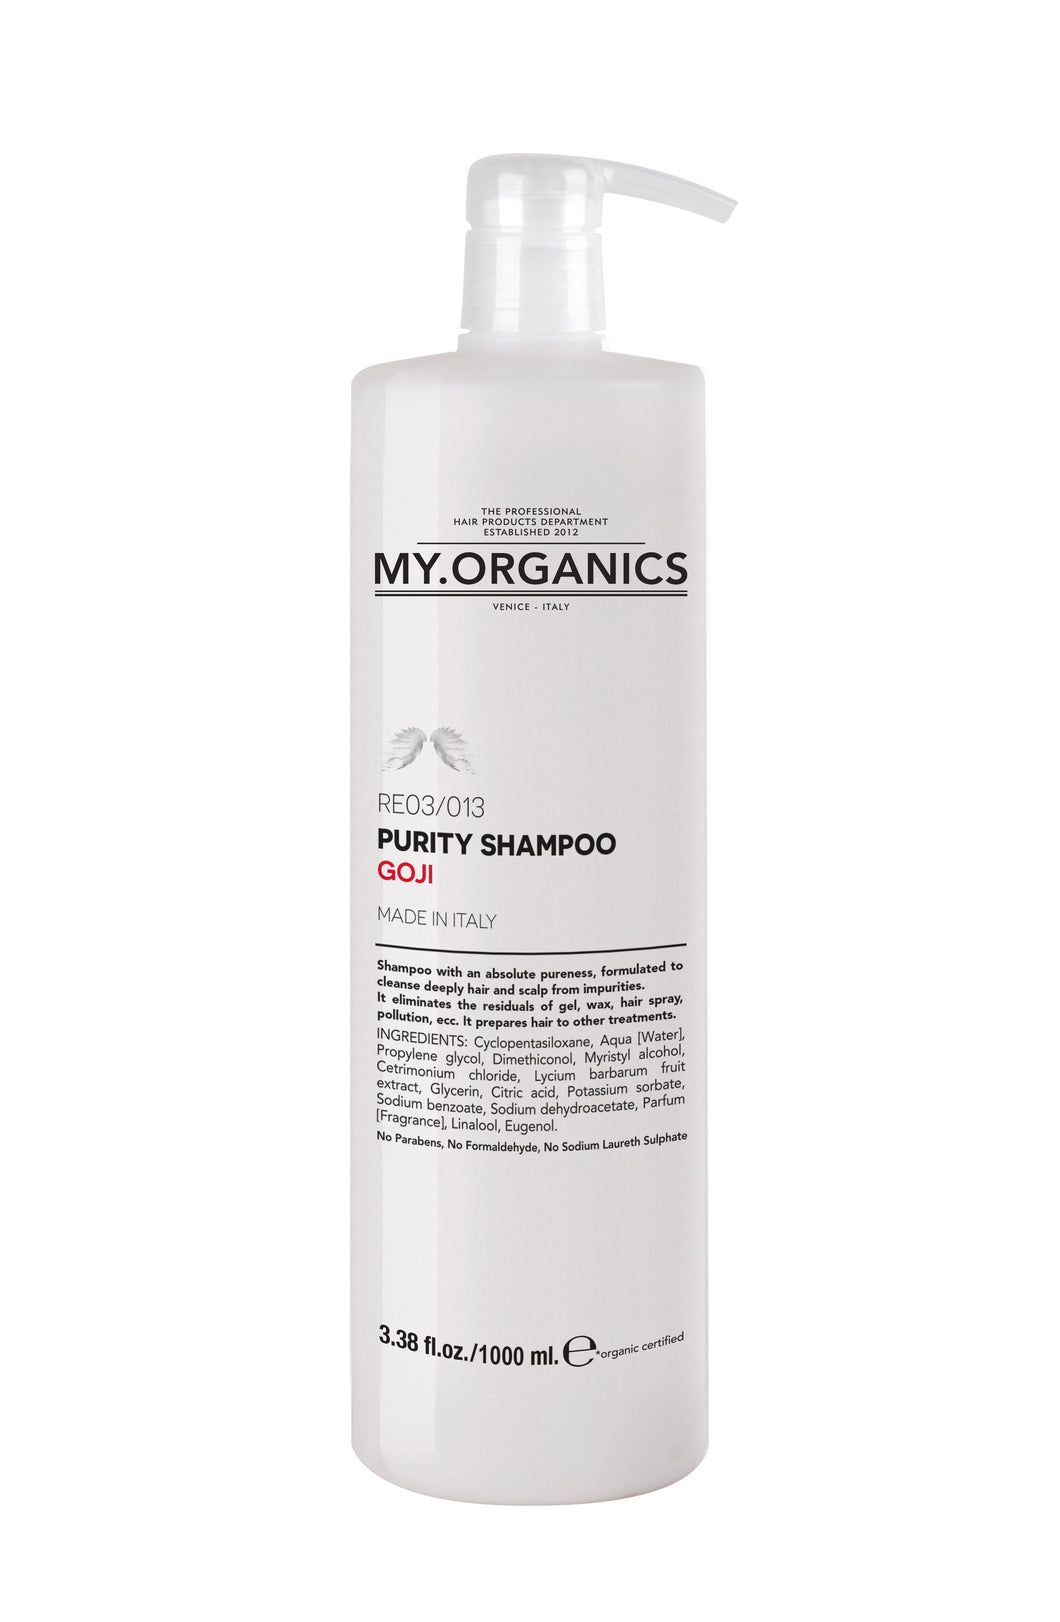 Purity Shampoo 1000ml